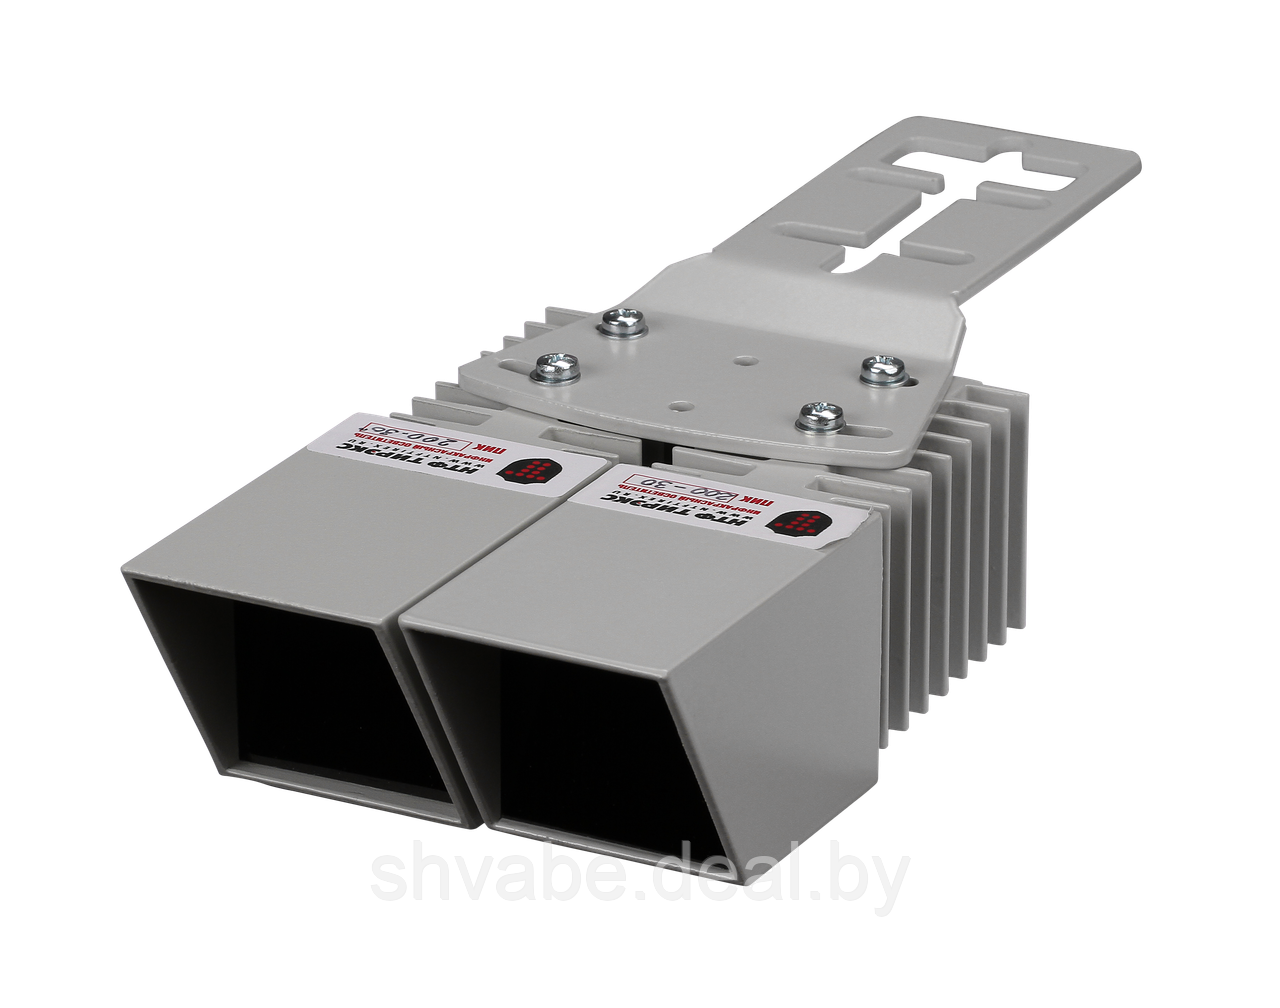 Прожекторы серии ПИК 200 - сборка из 2-х модулей с возможностью регулировки угла излучения